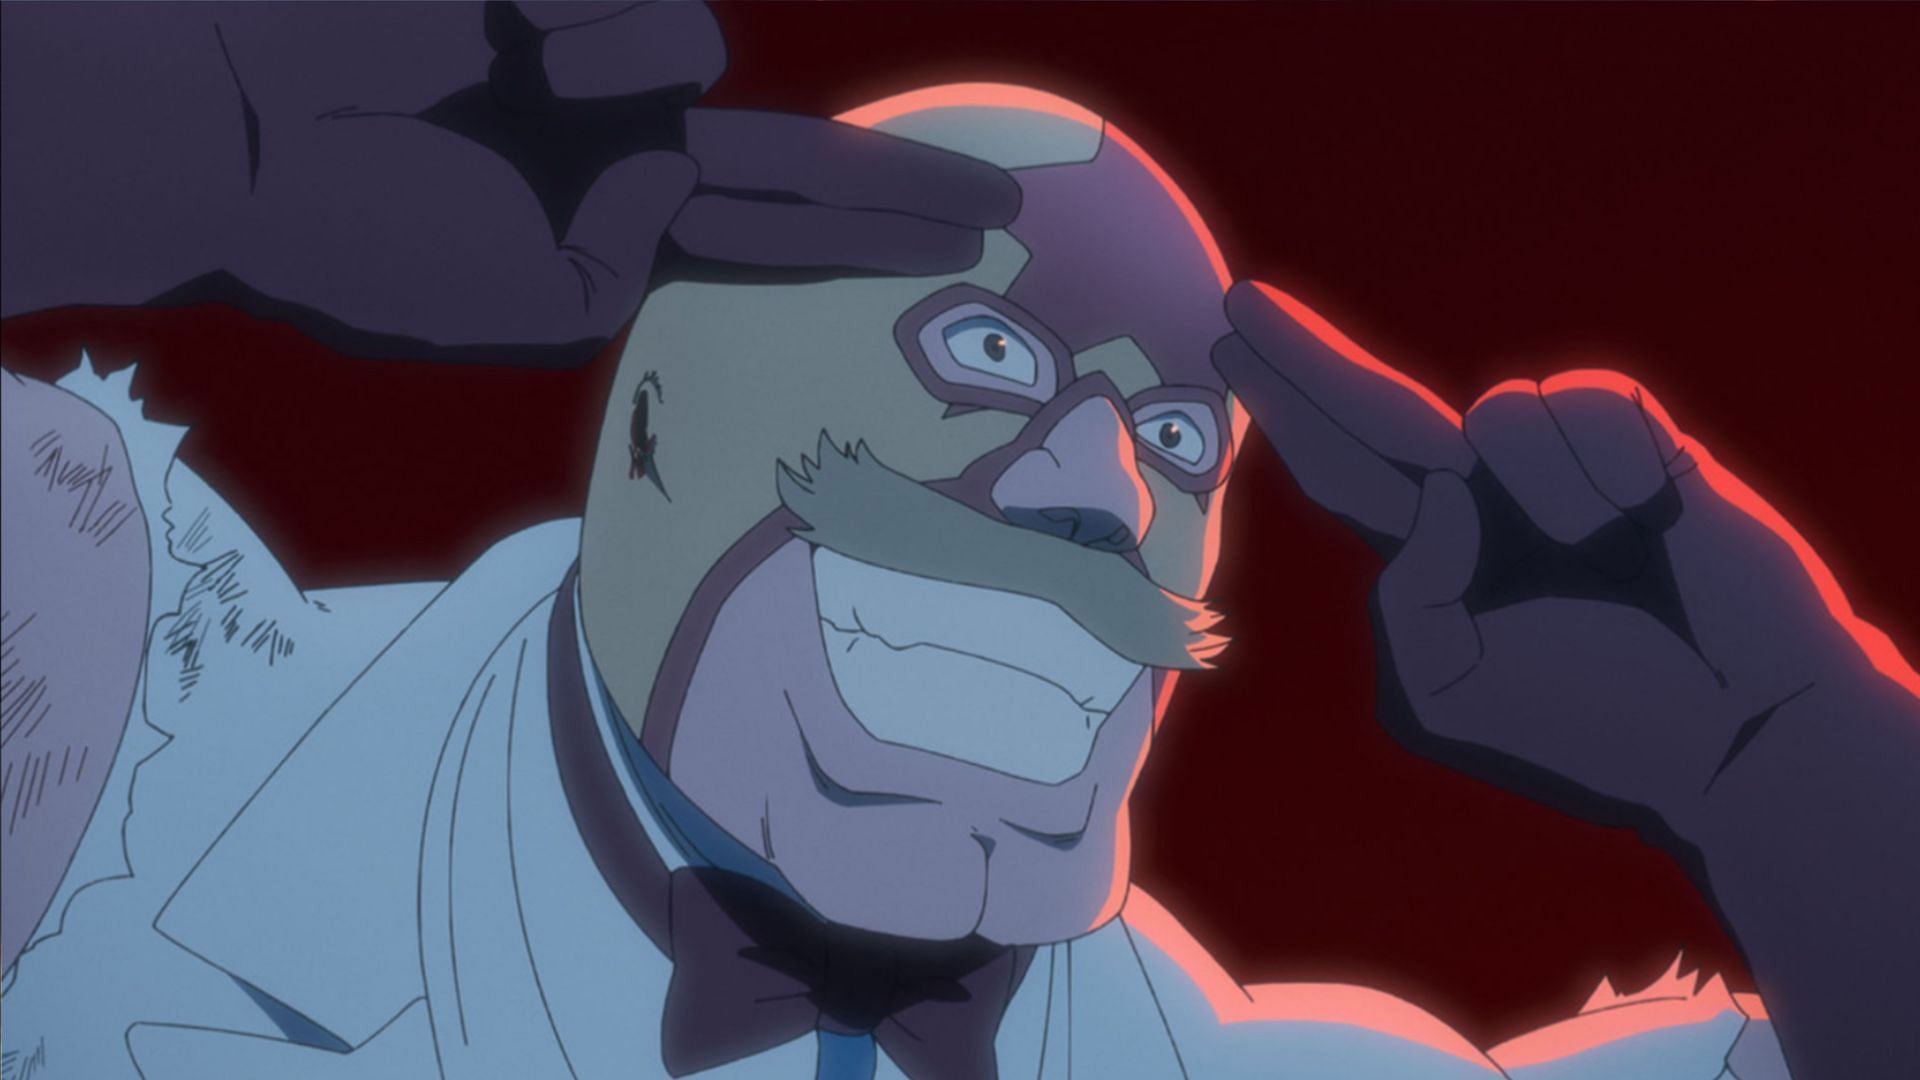 Mask De Masculine as seen in Bleach TYBW episode 18 preview (Image via Studio Pierrot)